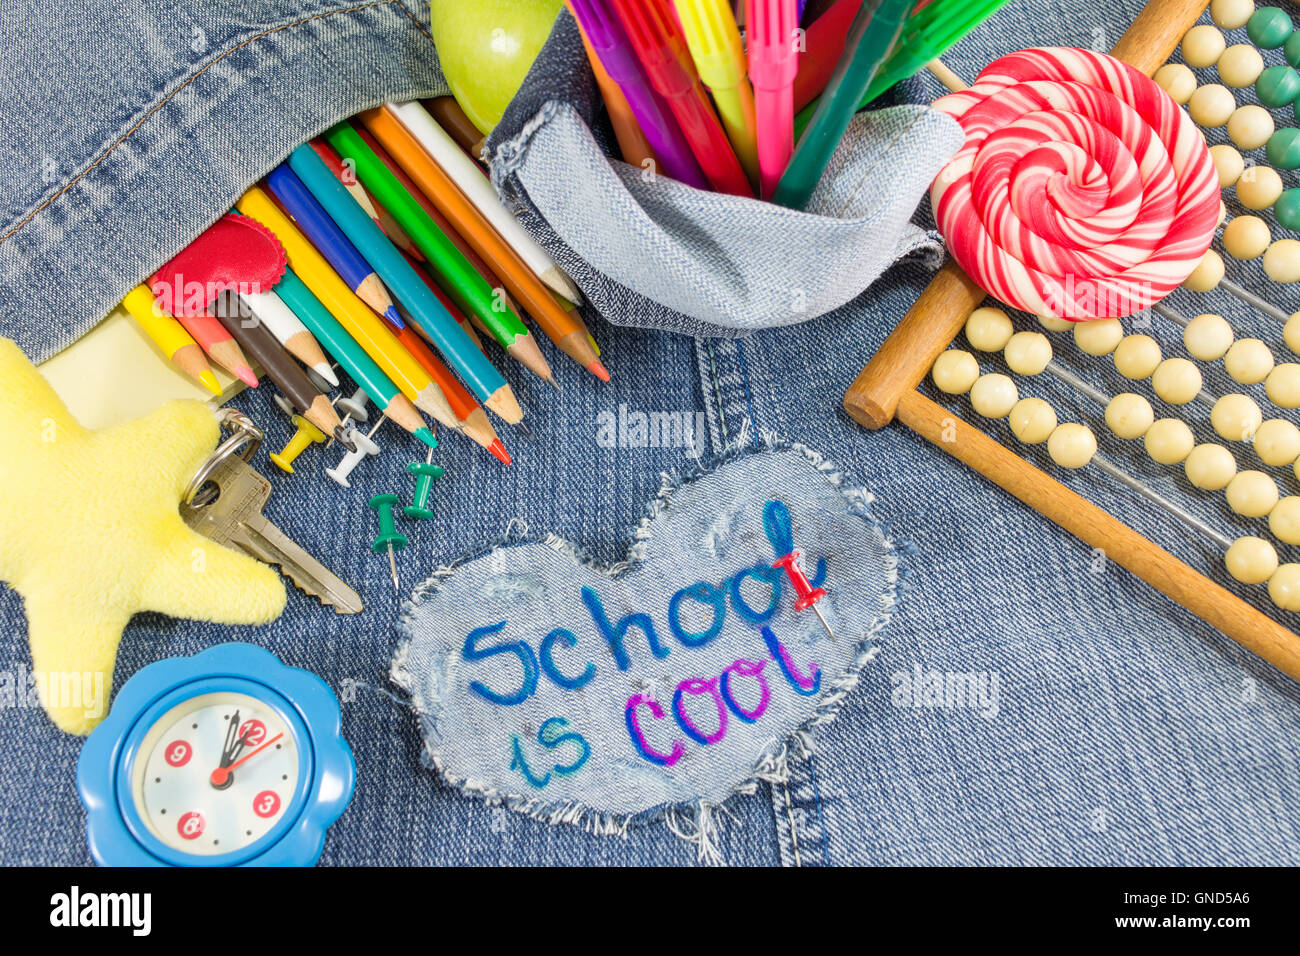 Schule ist cool Schild mit kreativen Lernobjekte auf Blue jeans Stockfoto